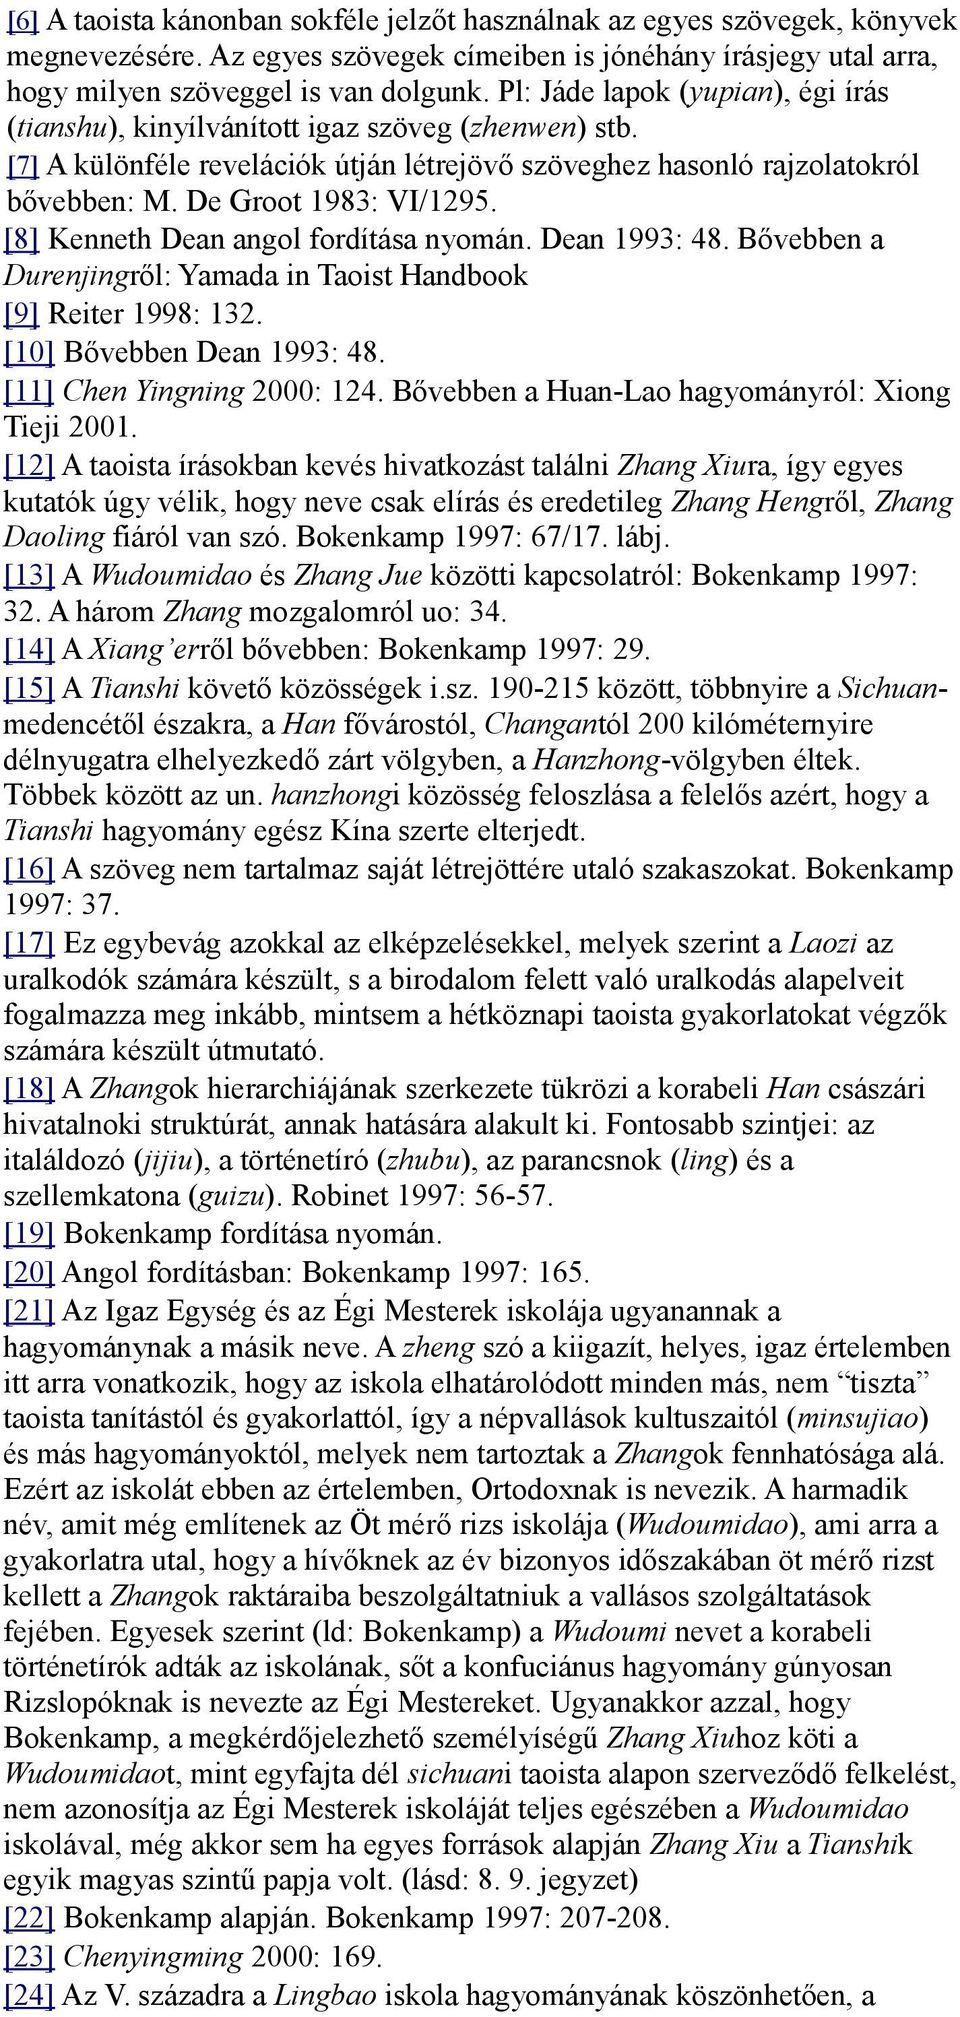 [8] Kenneth Dean angol fordítása nyomán. Dean 1993: 48. Bővebben a Durenjingről: Yamada in Taoist Handbook [9] Reiter 1998: 132. [10] Bővebben Dean 1993: 48. [11] Chen Yingning 2000: 124.